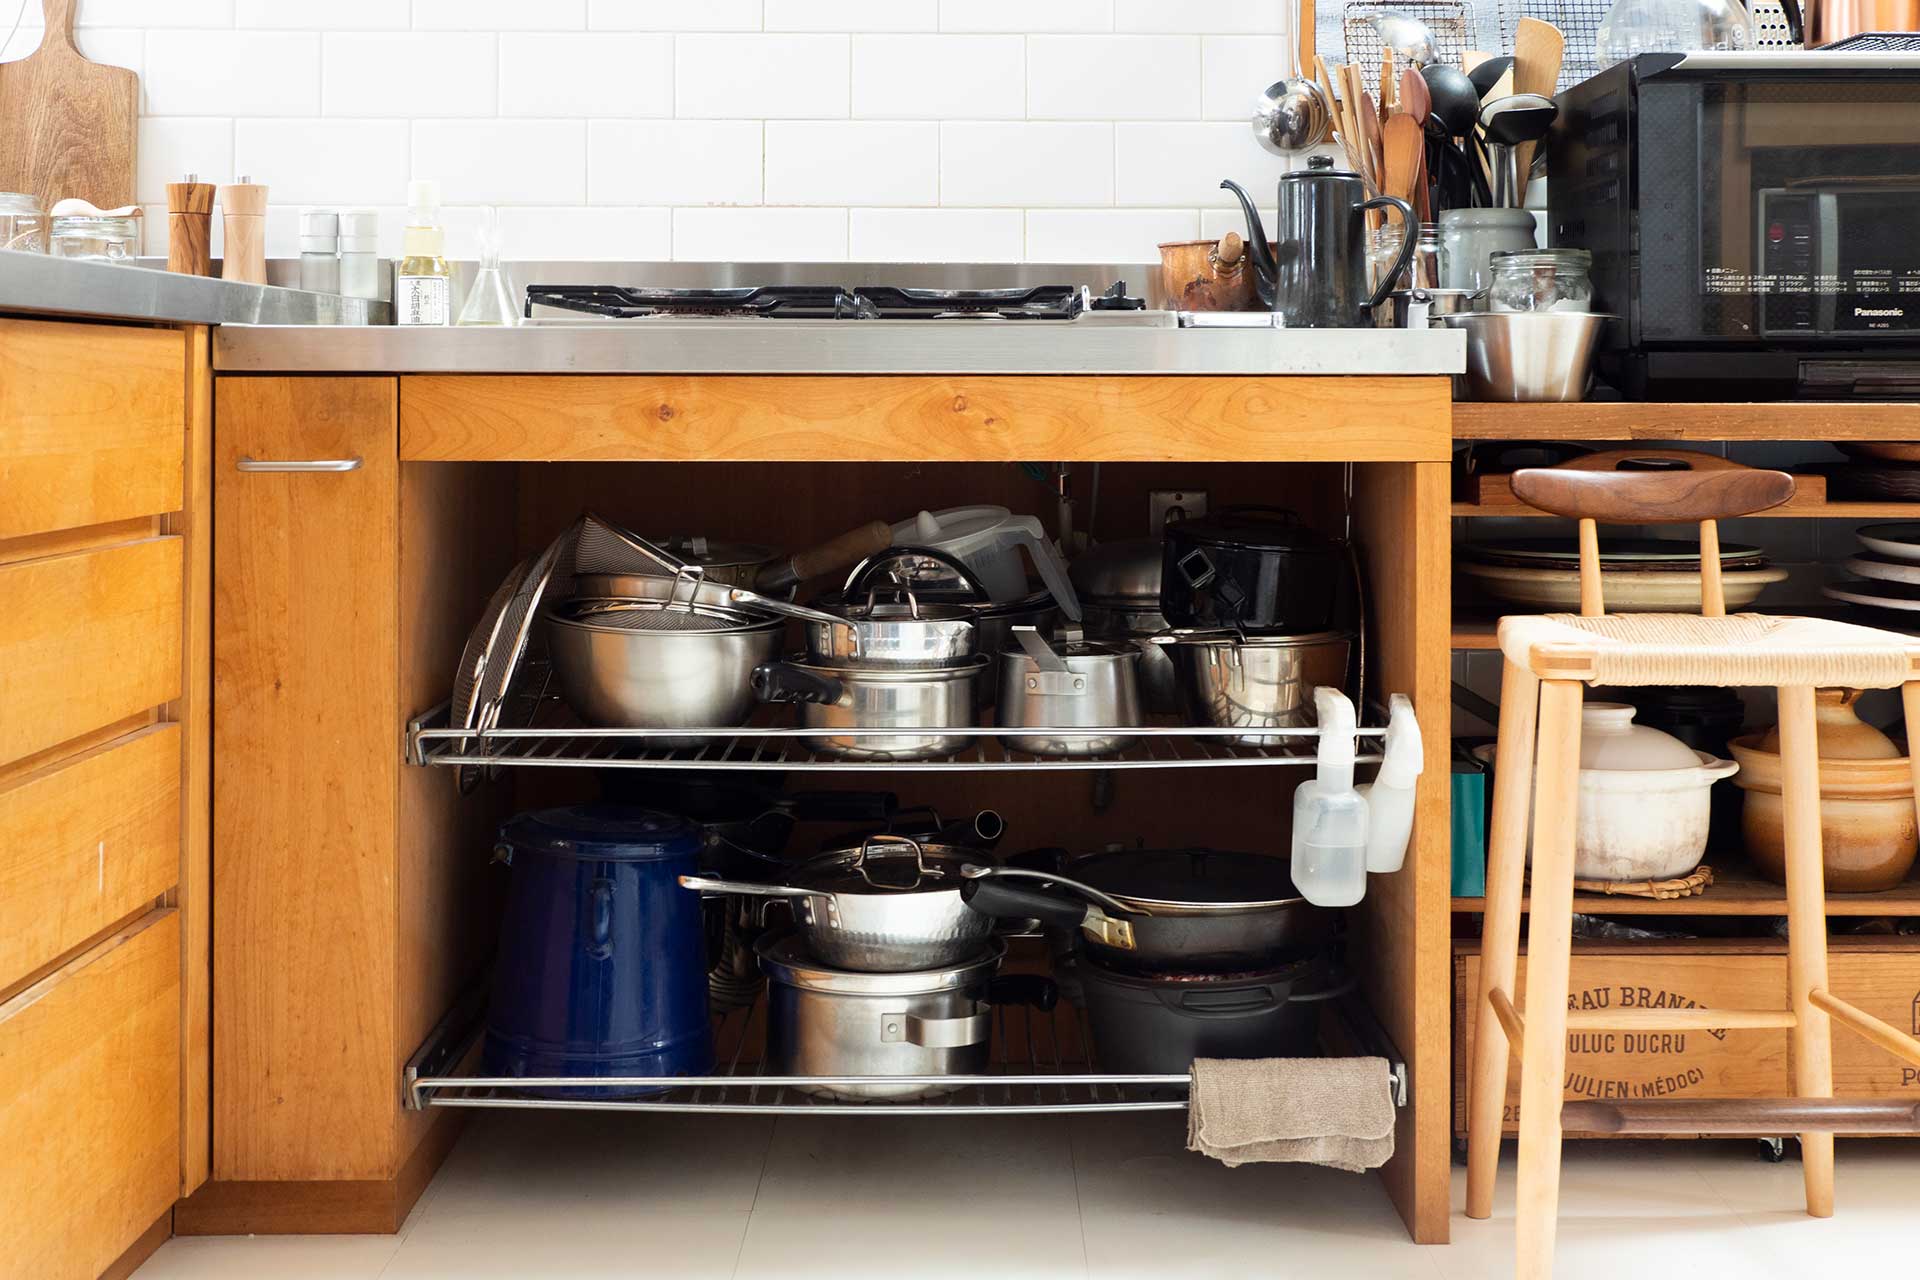 建築家とオーダーキッチンの家具屋さんに相談し、ステンレスと無垢材を組み合わせて造作した温かみのあるキッチン。オープンな収納に使い込まれた台所道具が並ぶ。